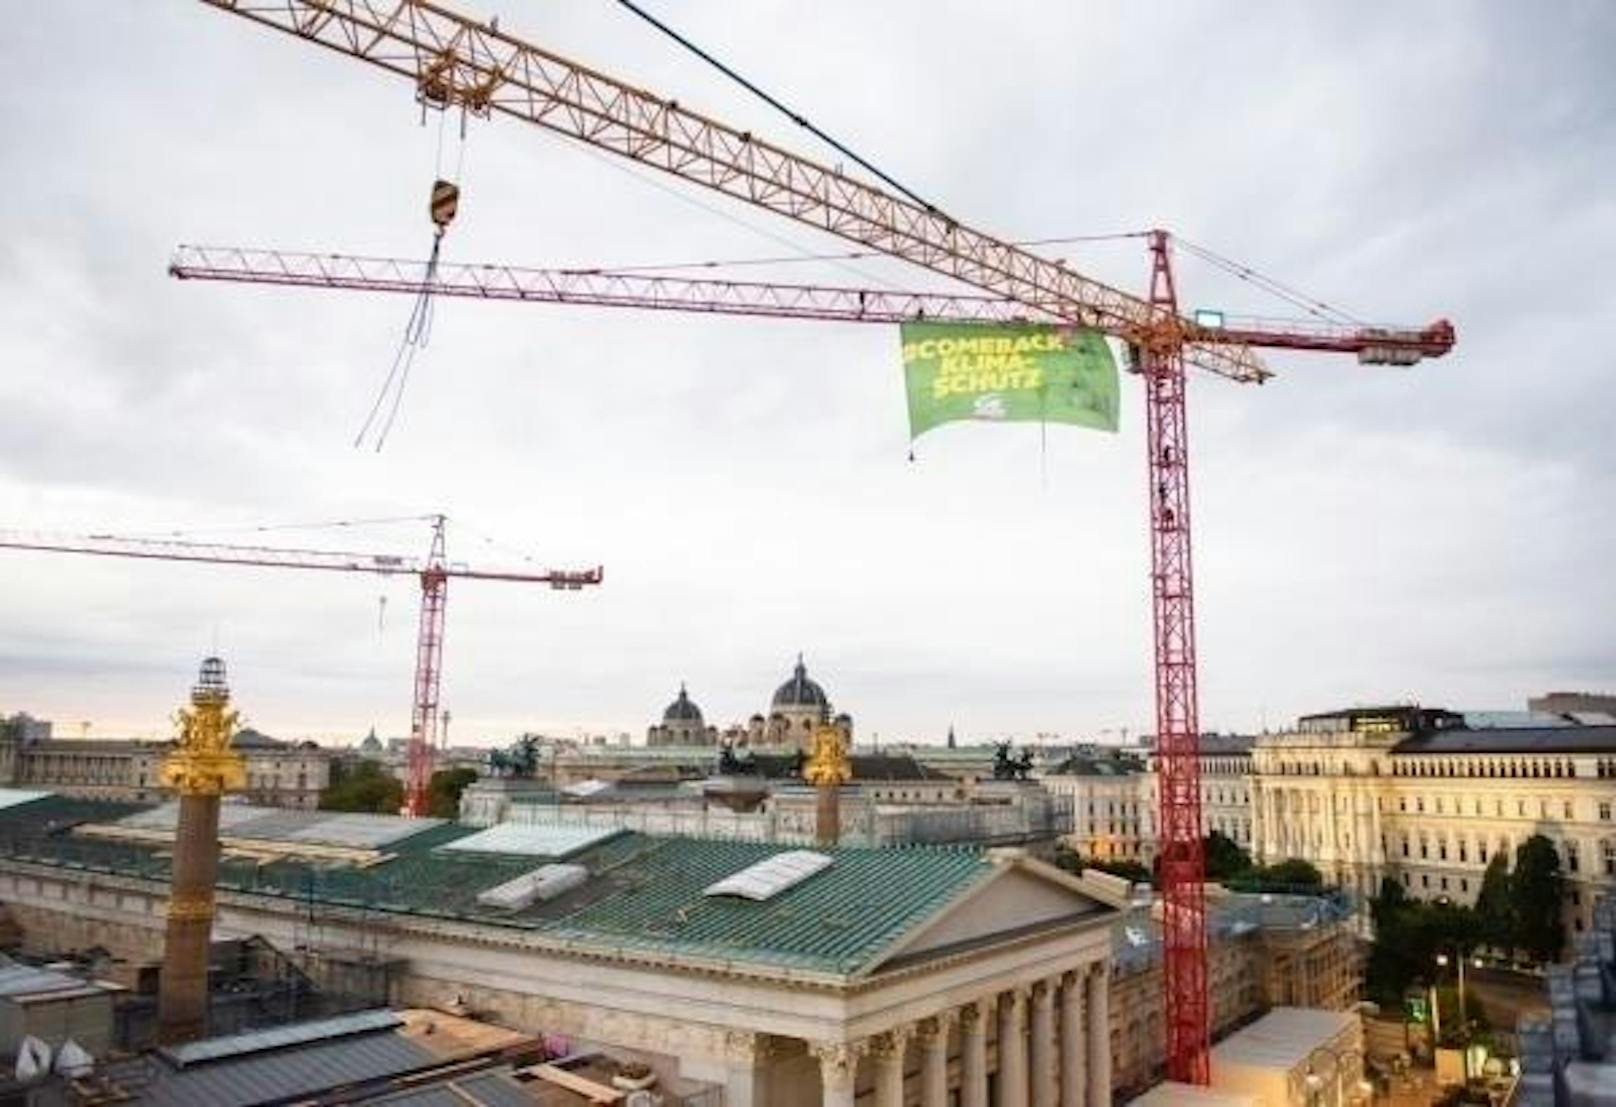 Ein bisschen Aktionismus war auch dabei: An einem Baukran über dem Parlament hängt nun ein Grünen-Plakat.